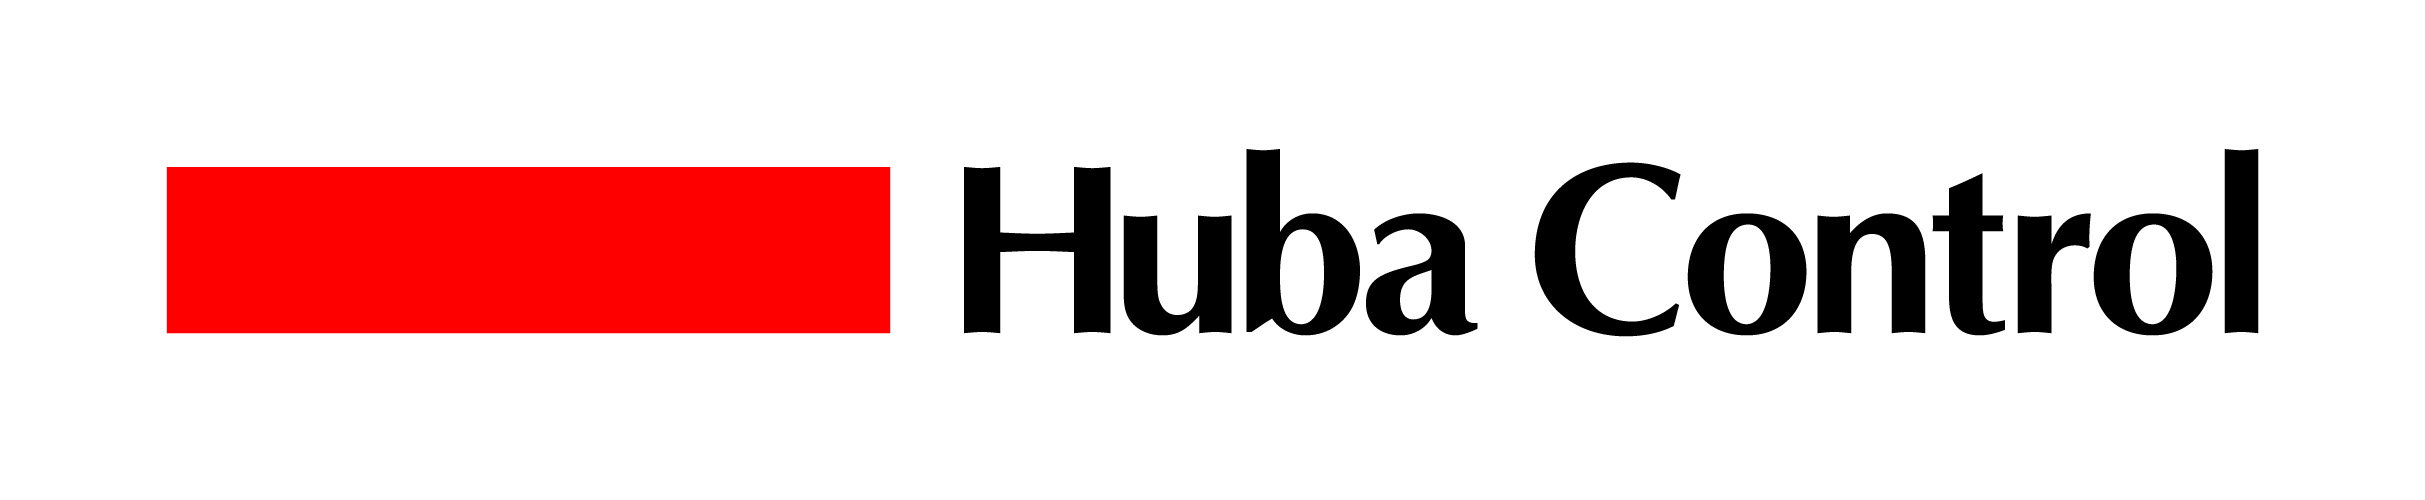 Huba Control Logo